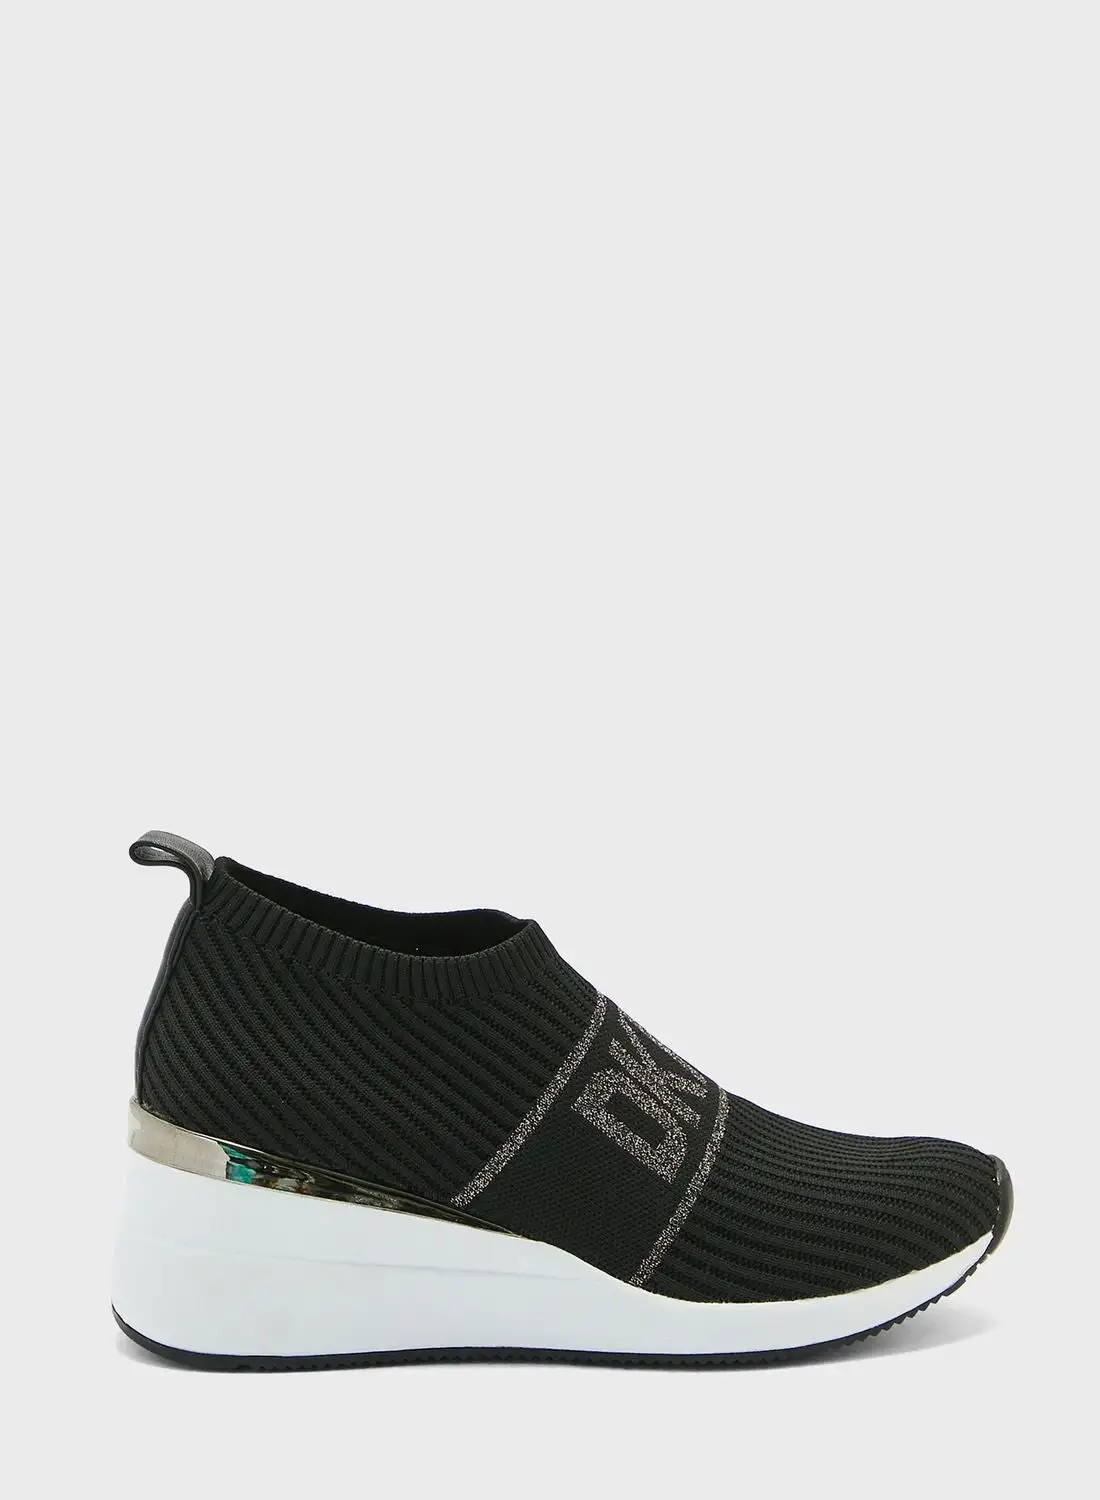 DKNY Phebe  Low Top Sneakers